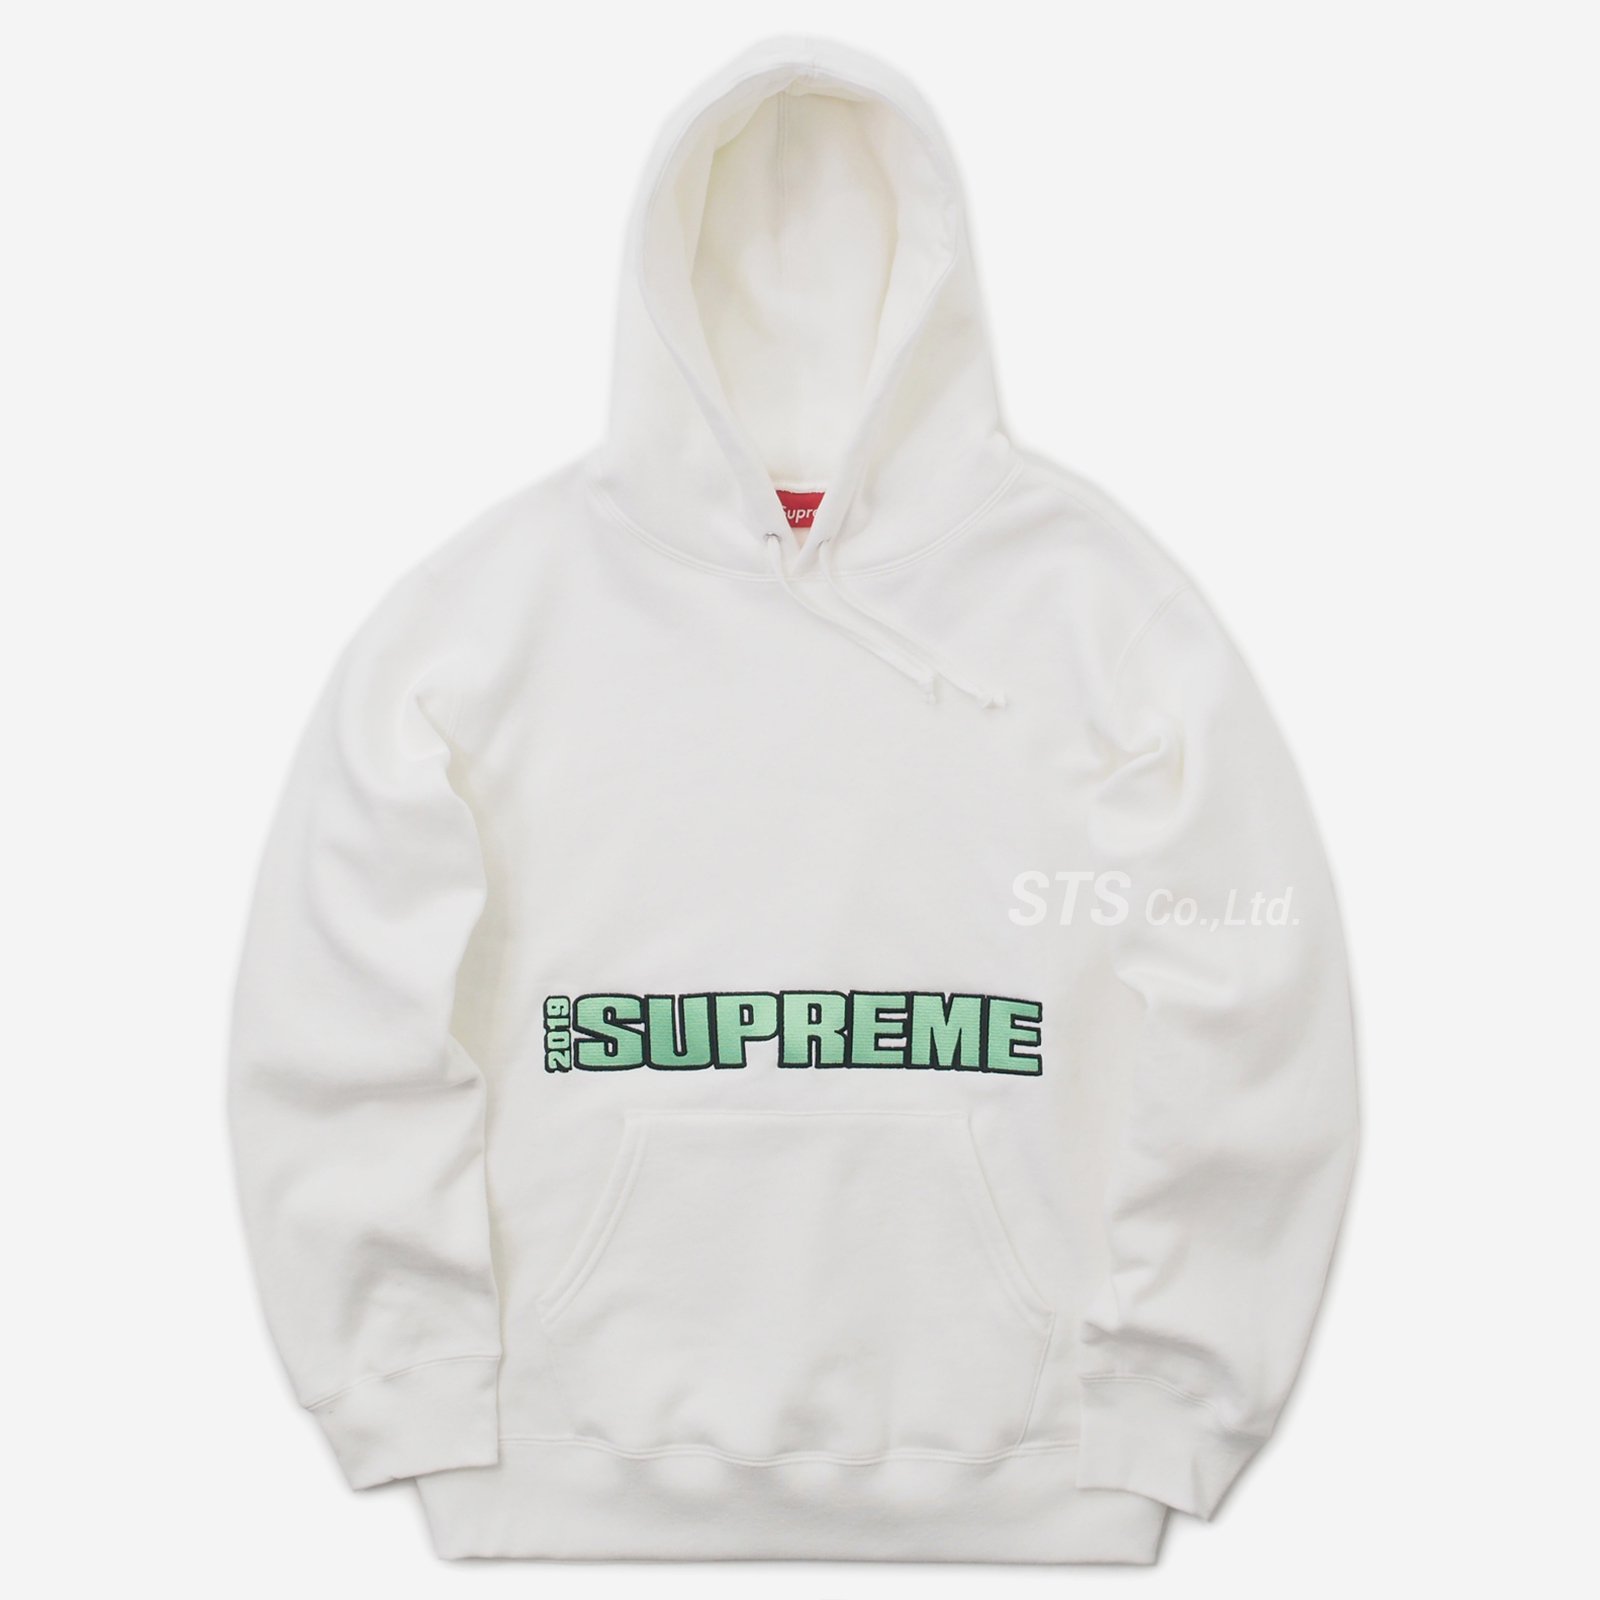 Supreme - Blockbuster Hooded Sweatshirt - ParkSIDER